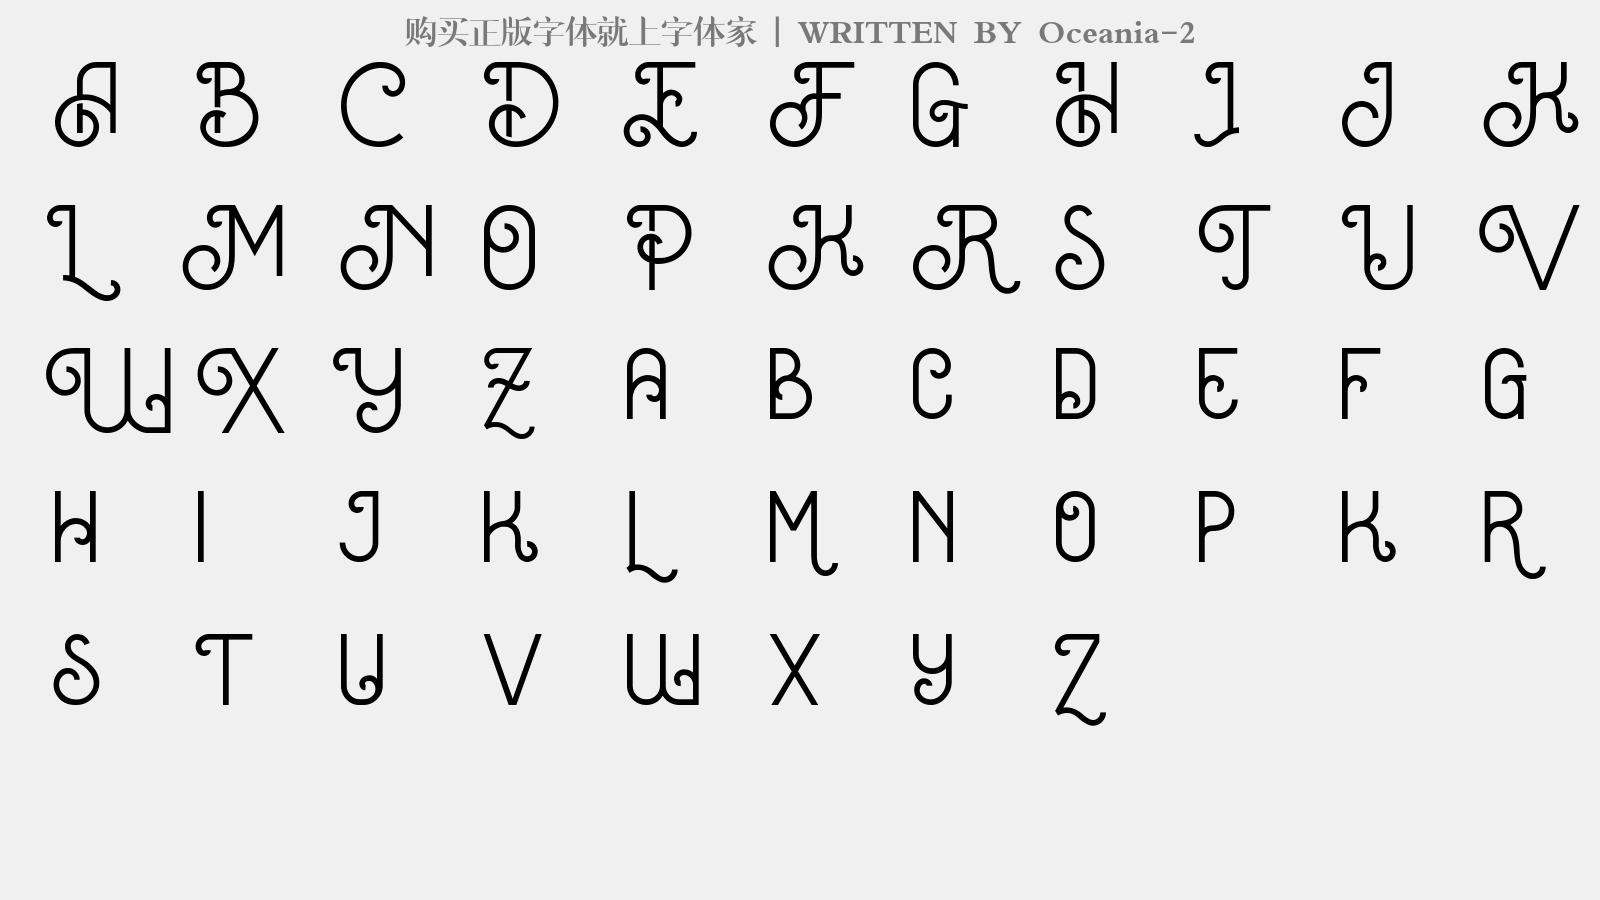 Oceania-2 - 大写字母/小写字母/数字